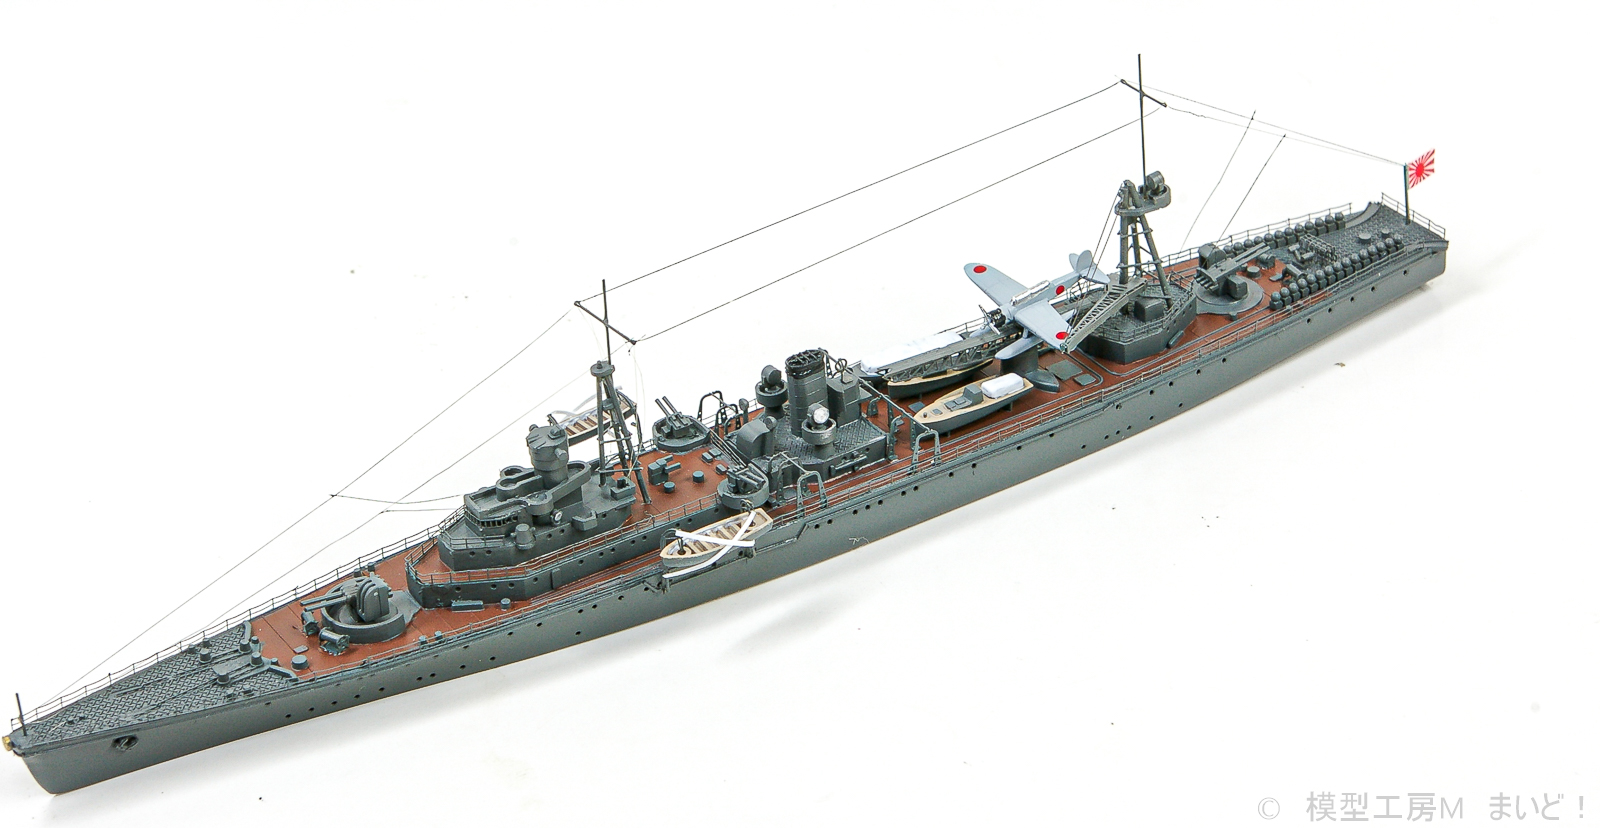 フジミ 1/700 日本海軍敷設艦「津軽」1941 完成 FUJIMI TUGARU艦船模型